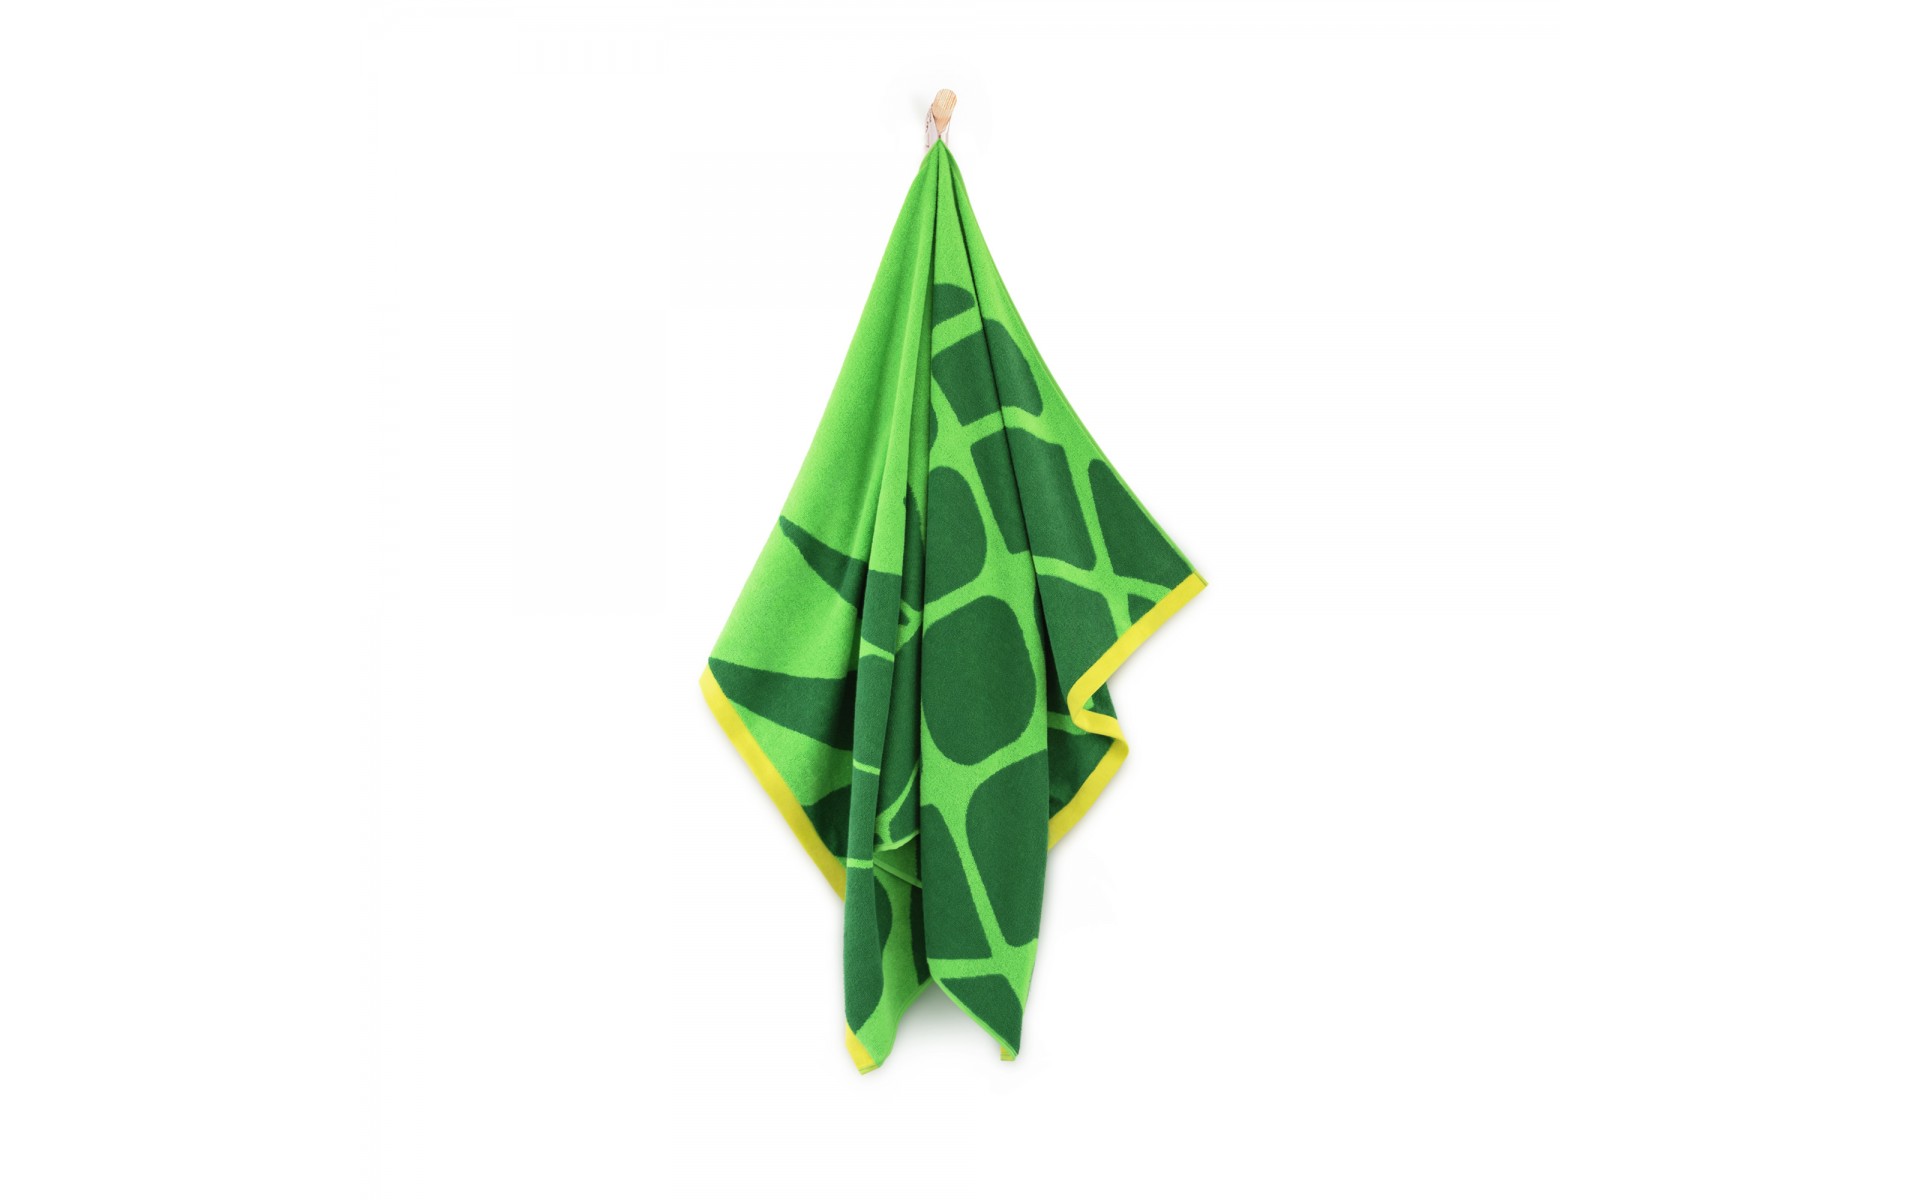 ręcznik ANANAS zielony - 9914